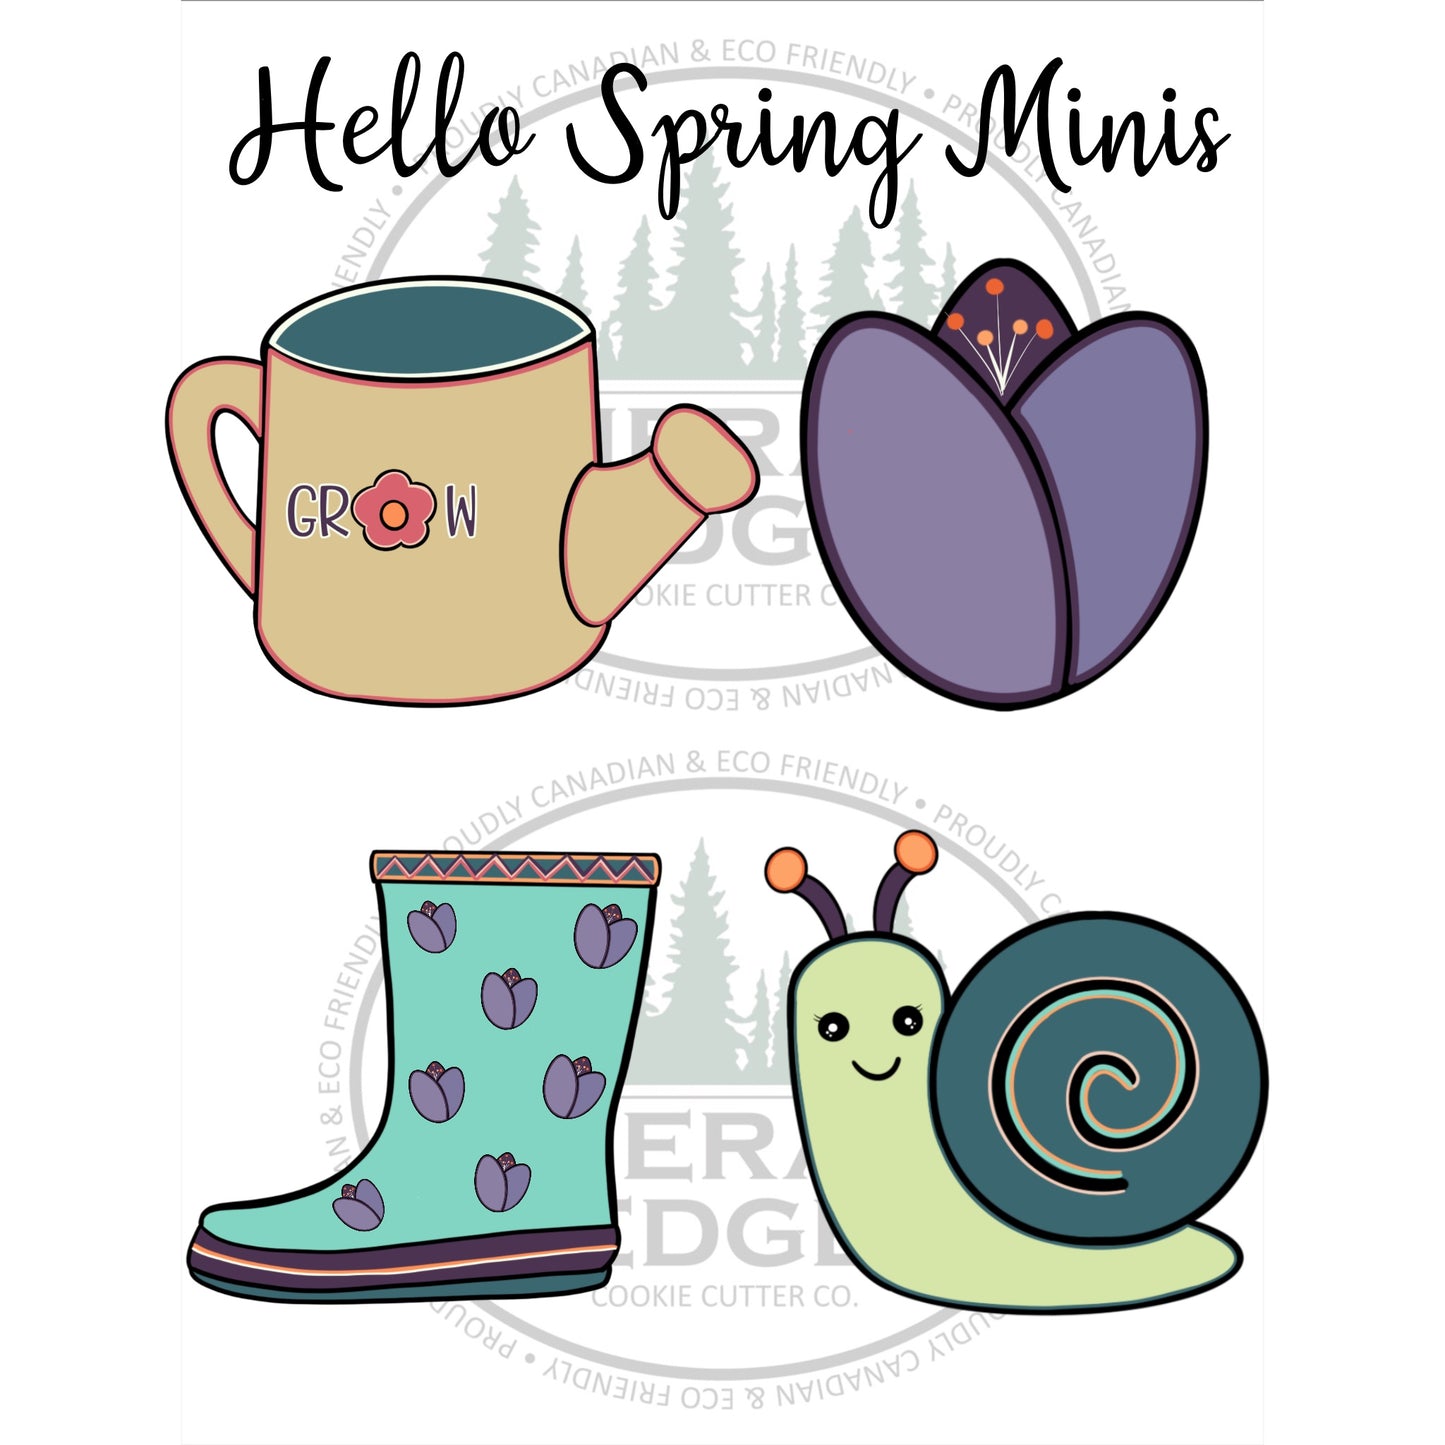 Hello Spring Minis